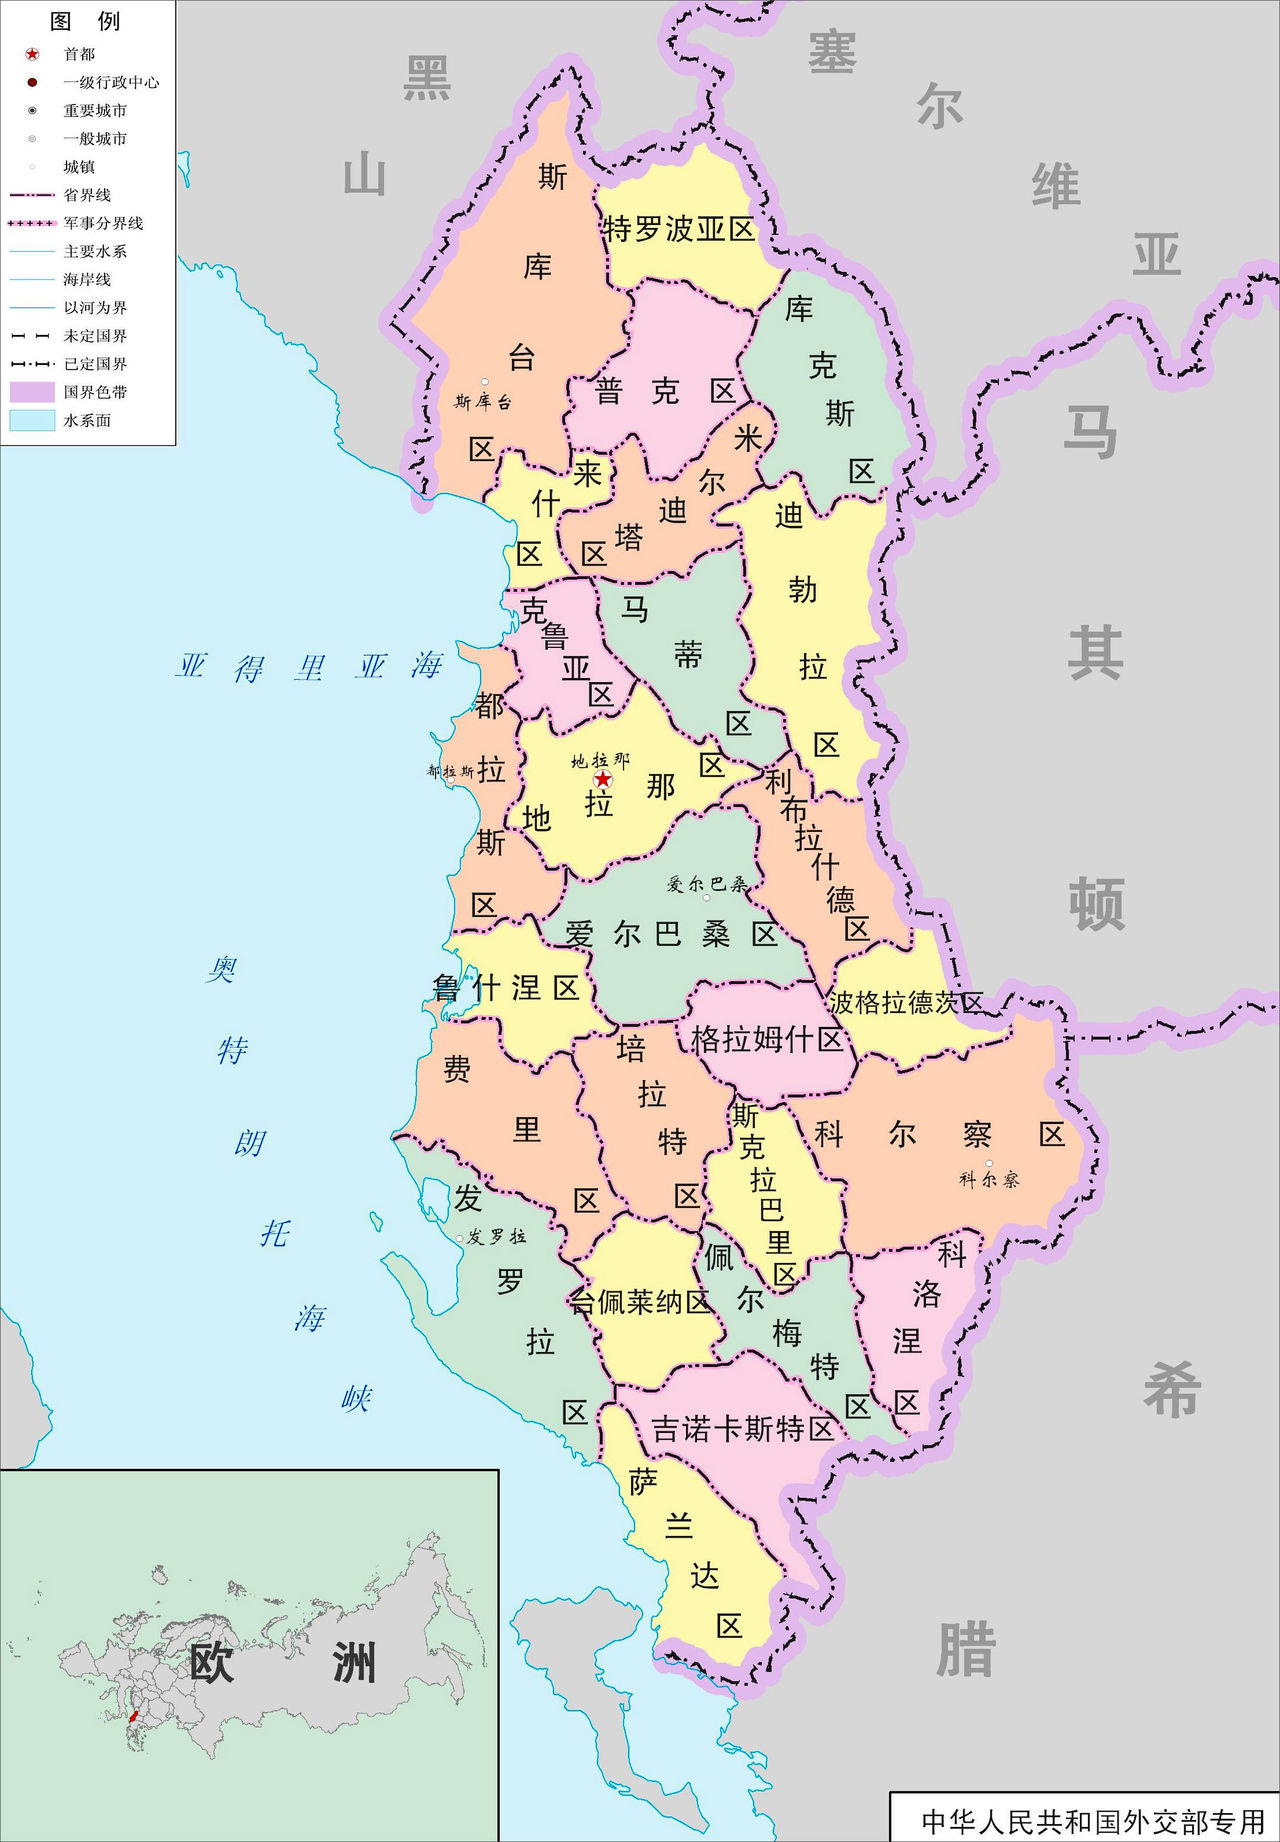 阿爾巴尼亞行政區劃